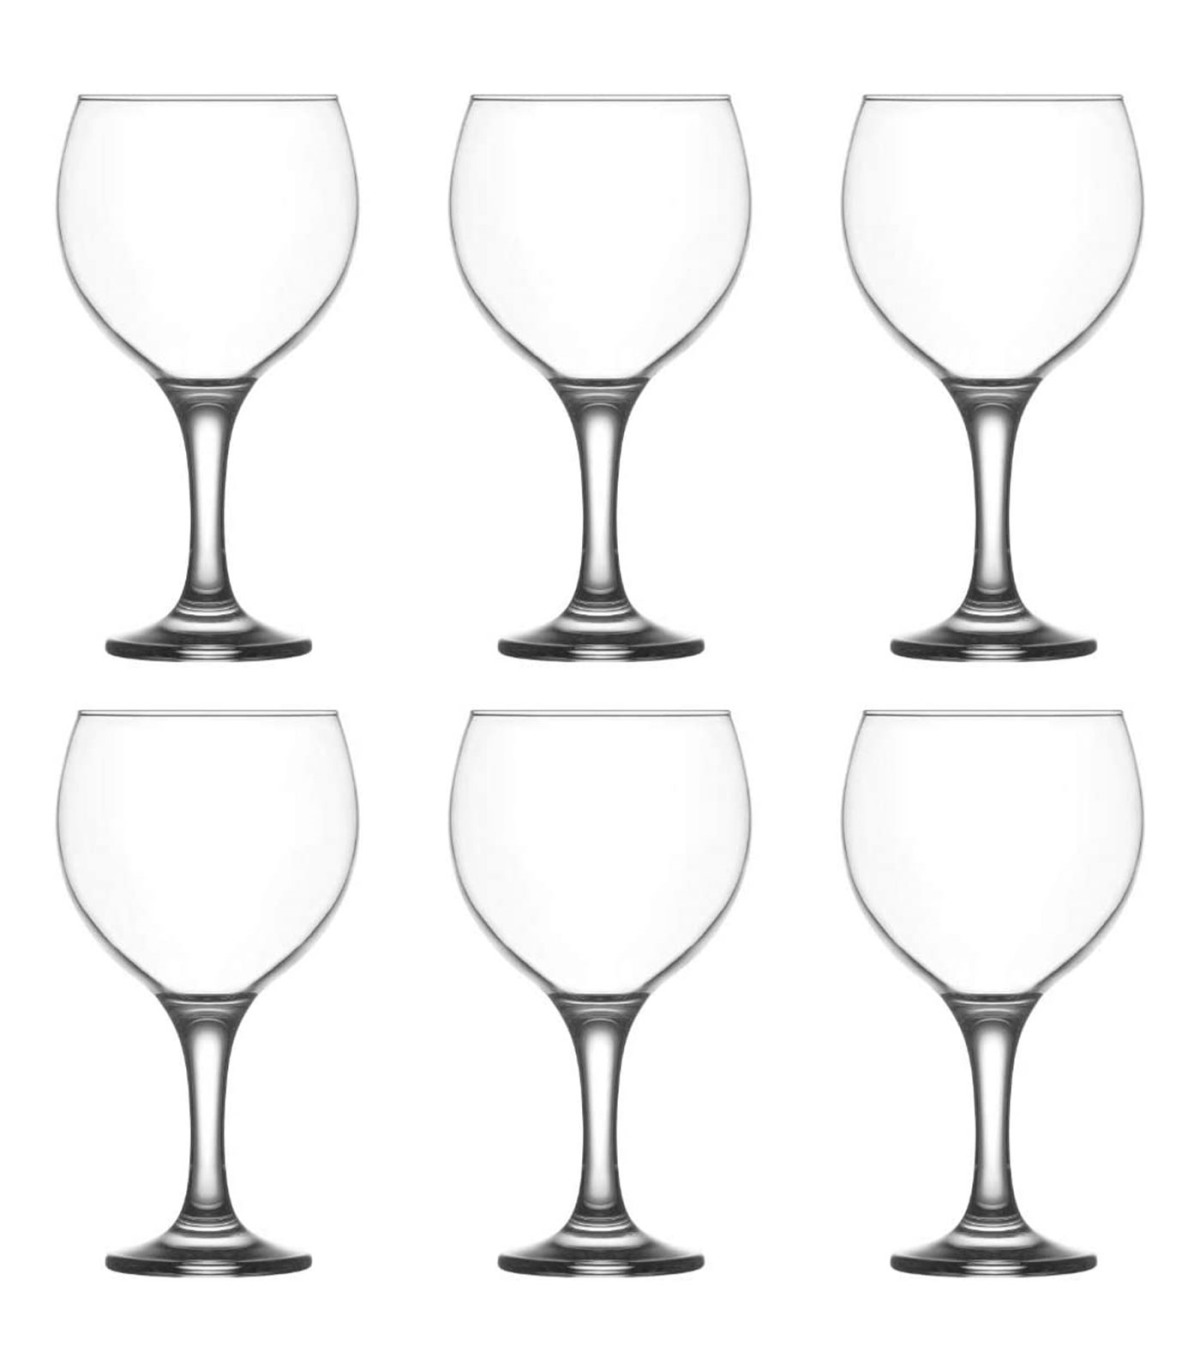 https://tradineur.com/69074-superlarge_default/tradineur--set-de-6-copas-de-cristal-misket-para-cocteles-combinados-vino-agua-aptas-para-lavavajillas-elegantes-fiestas-260-ml-.jpg